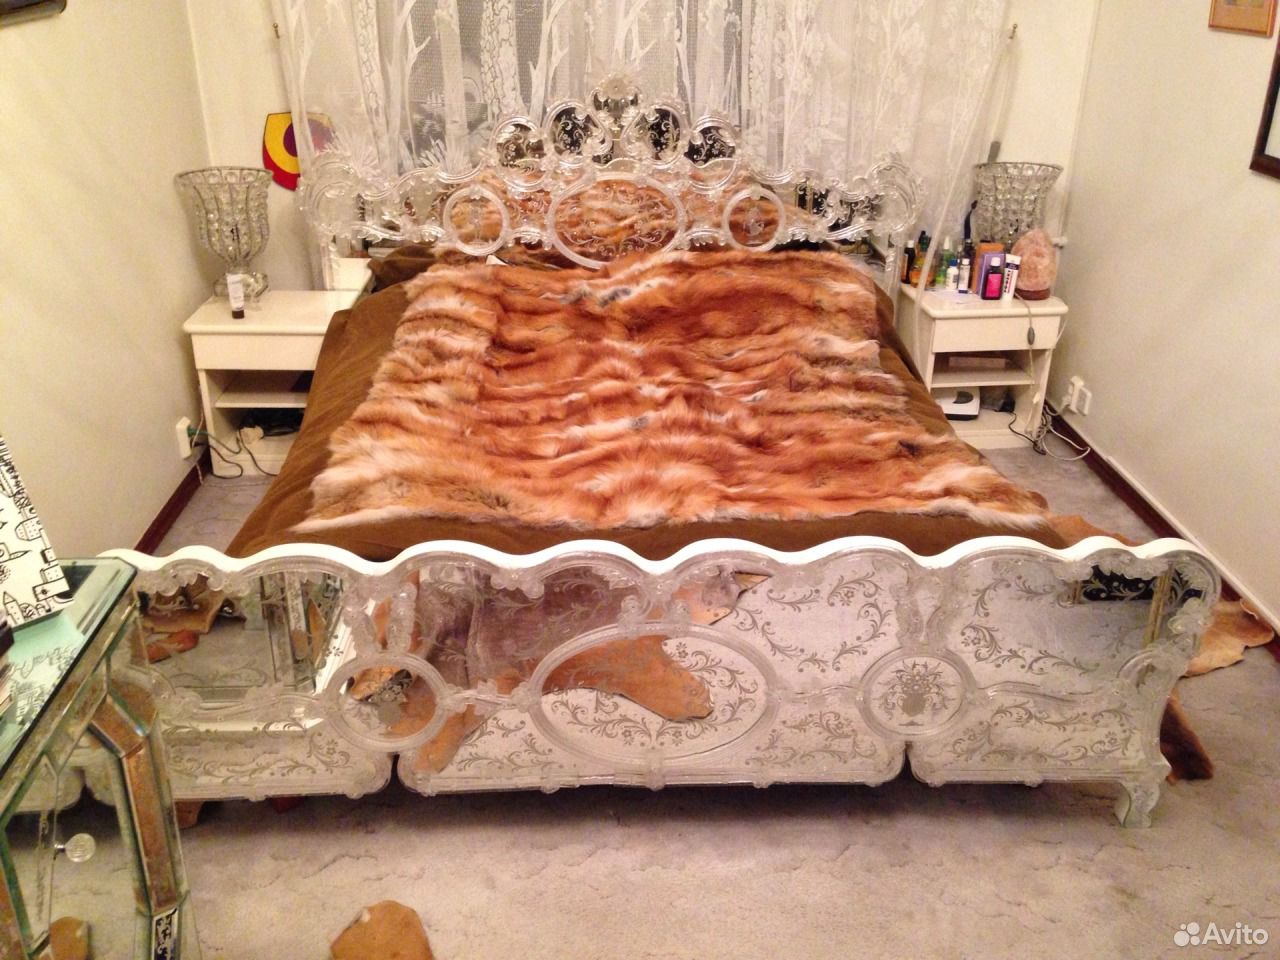 Кровать из Муранского стекла, антиквариат — фотография №1